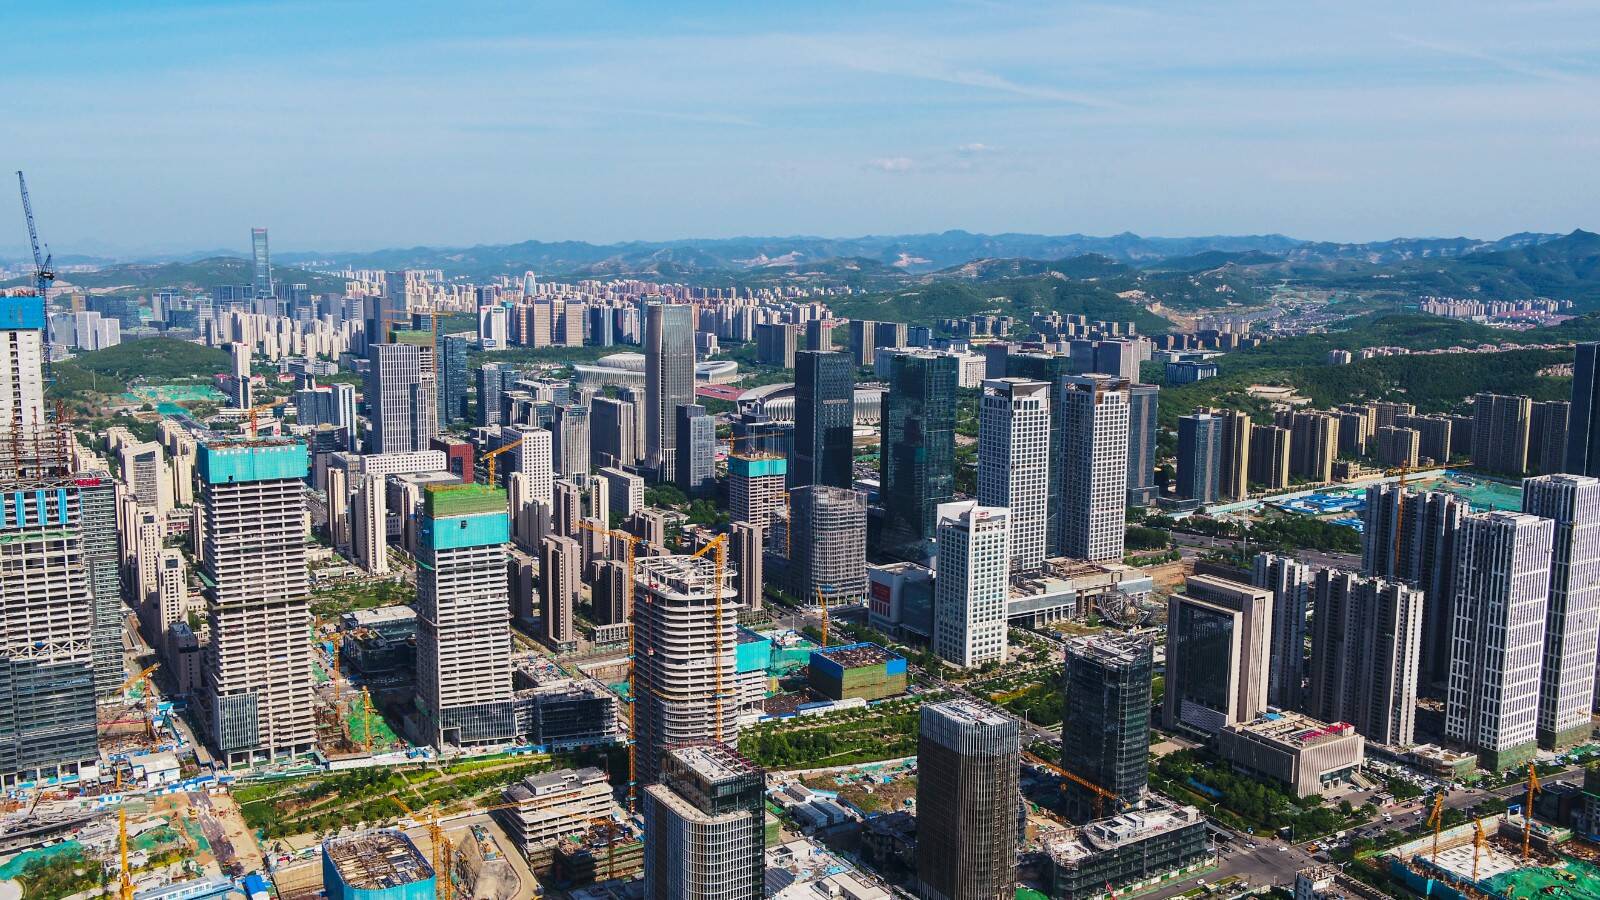 济南中央商务区核心区开发已接近尾声 历下城市建设重心转向老城更新